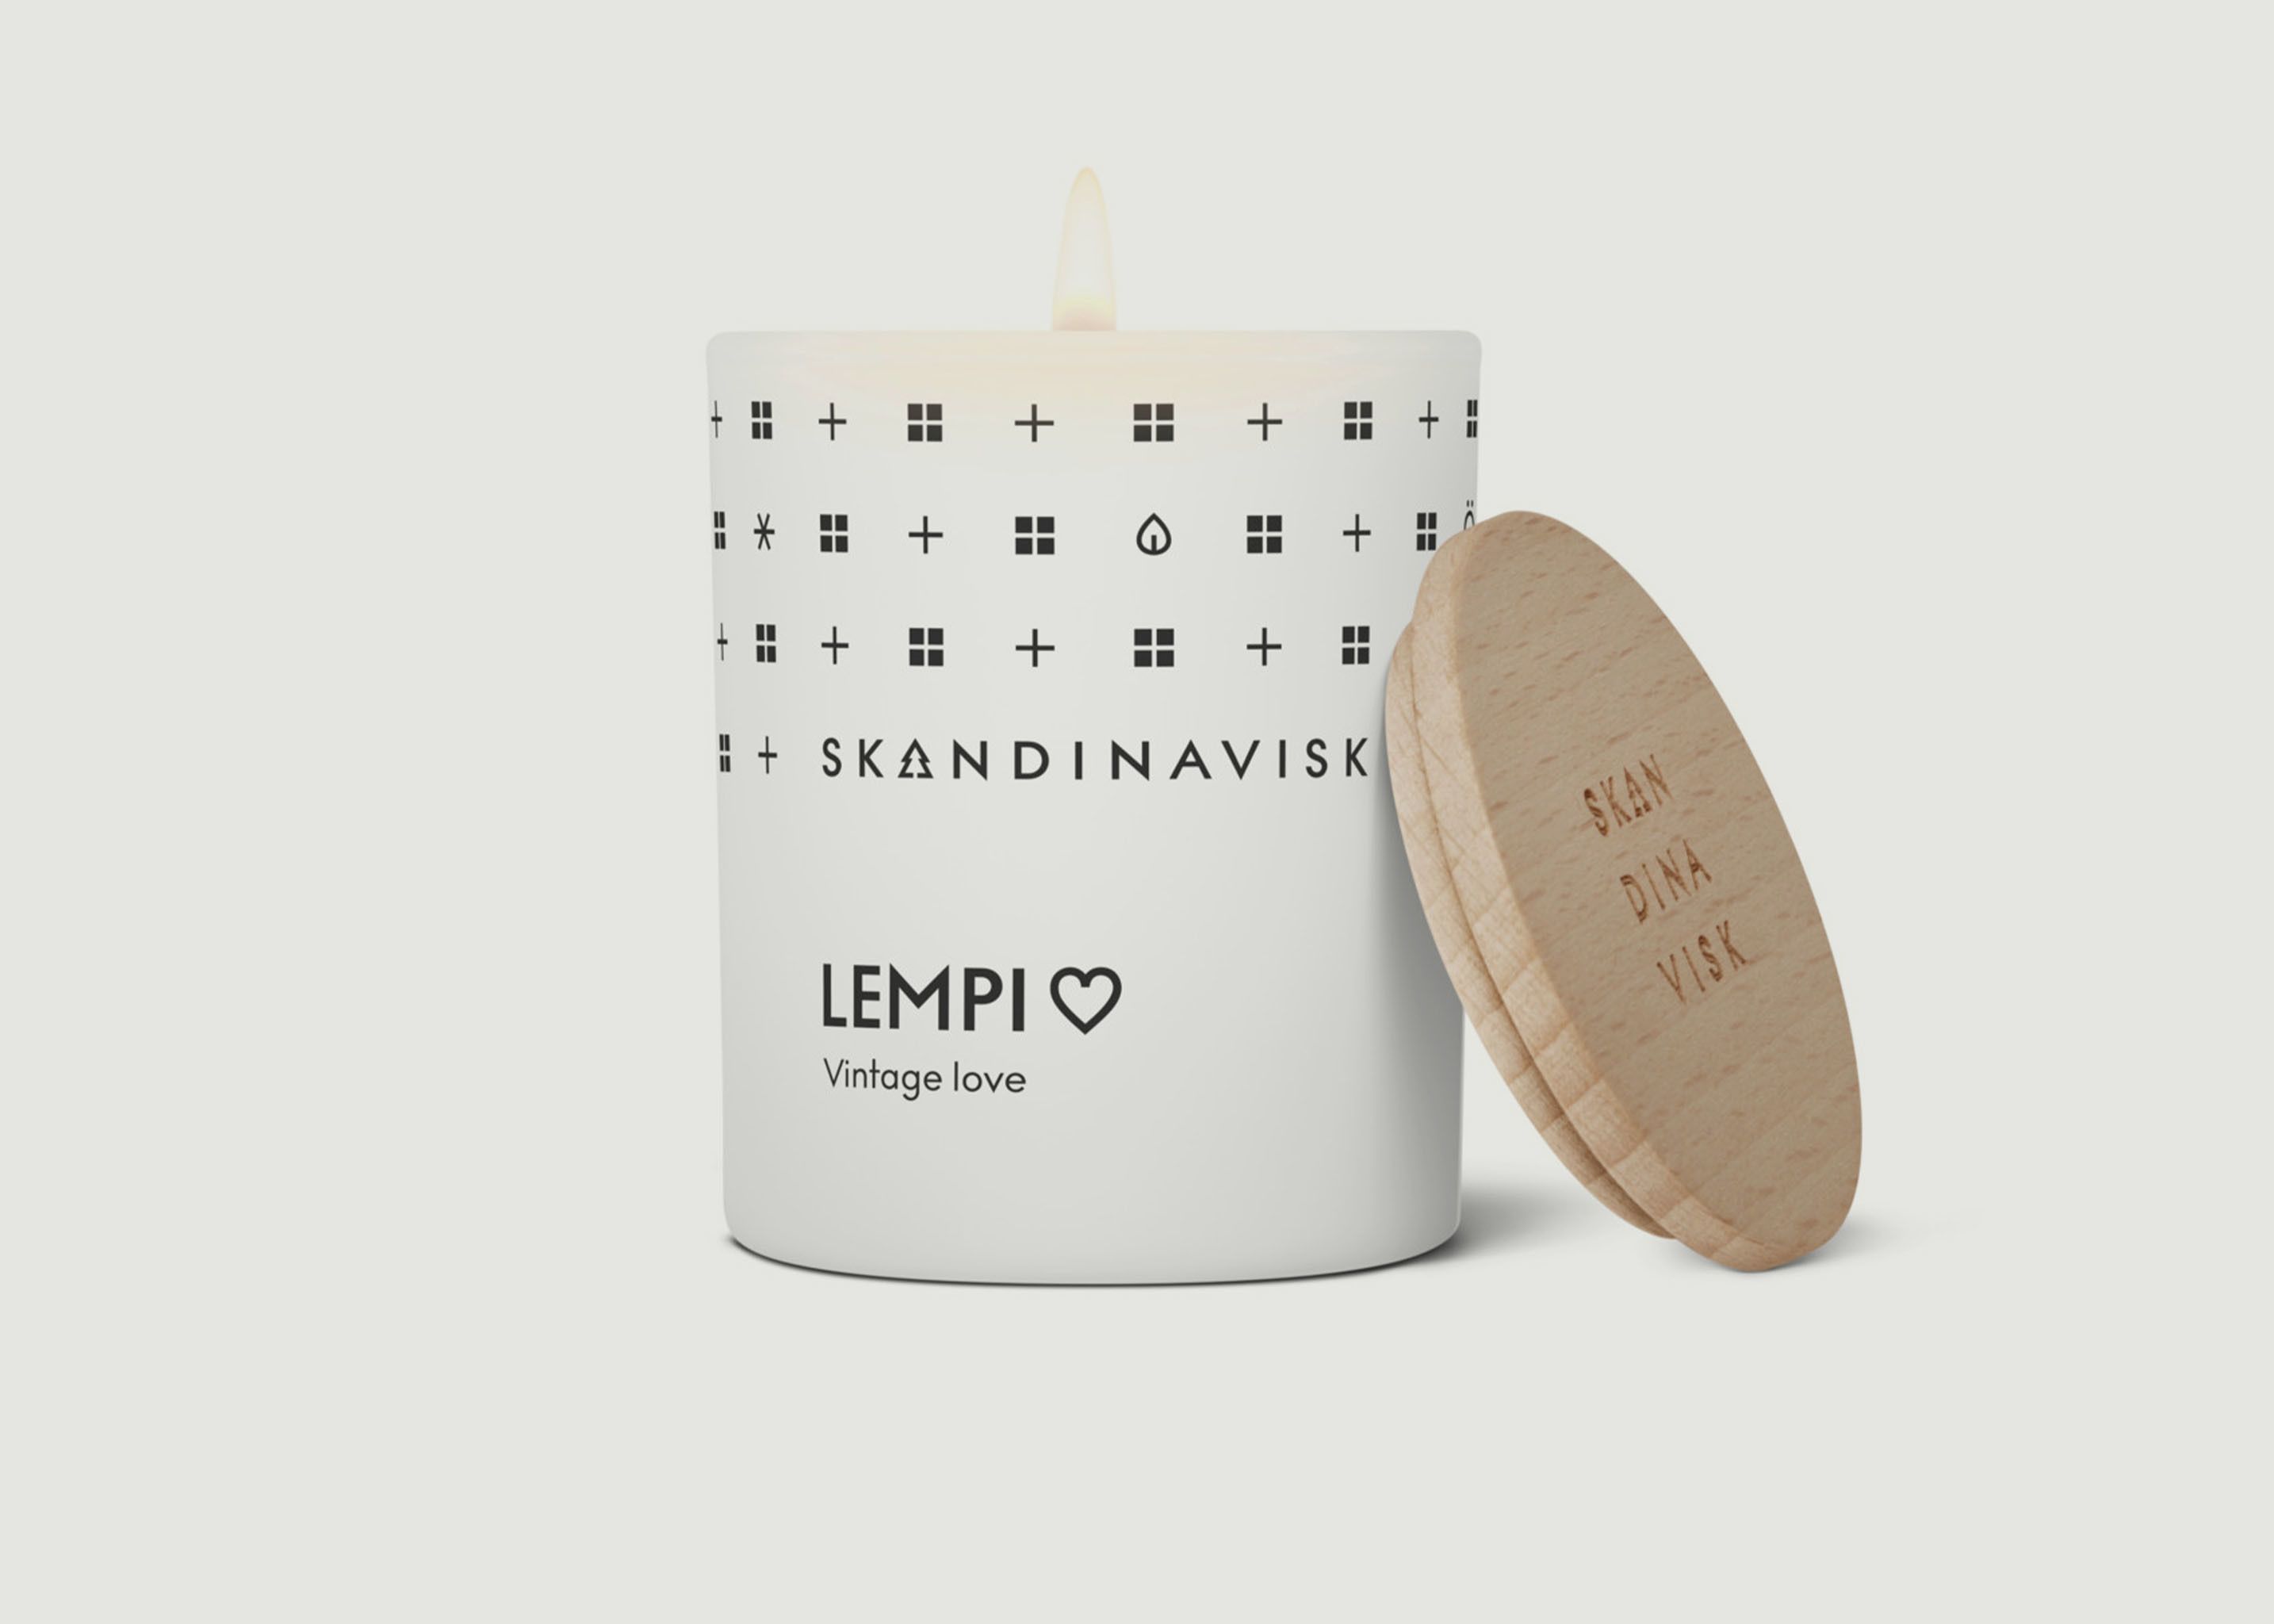 Bougie parfumée Lempi - Skandinavisk